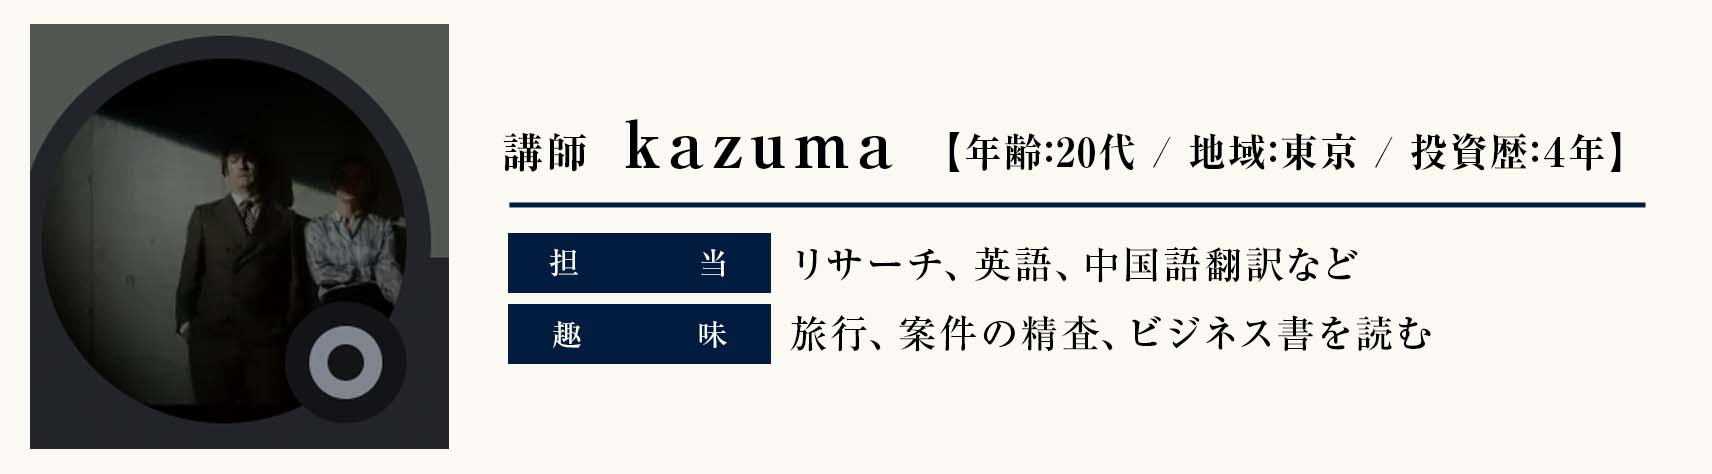 講師　kazuma
年齢：20代
地域：東京
投資歴：4年
担当：リサーチ、英語、中国語翻訳など
趣味：旅行、案件の精査、ビジネス書を読む
